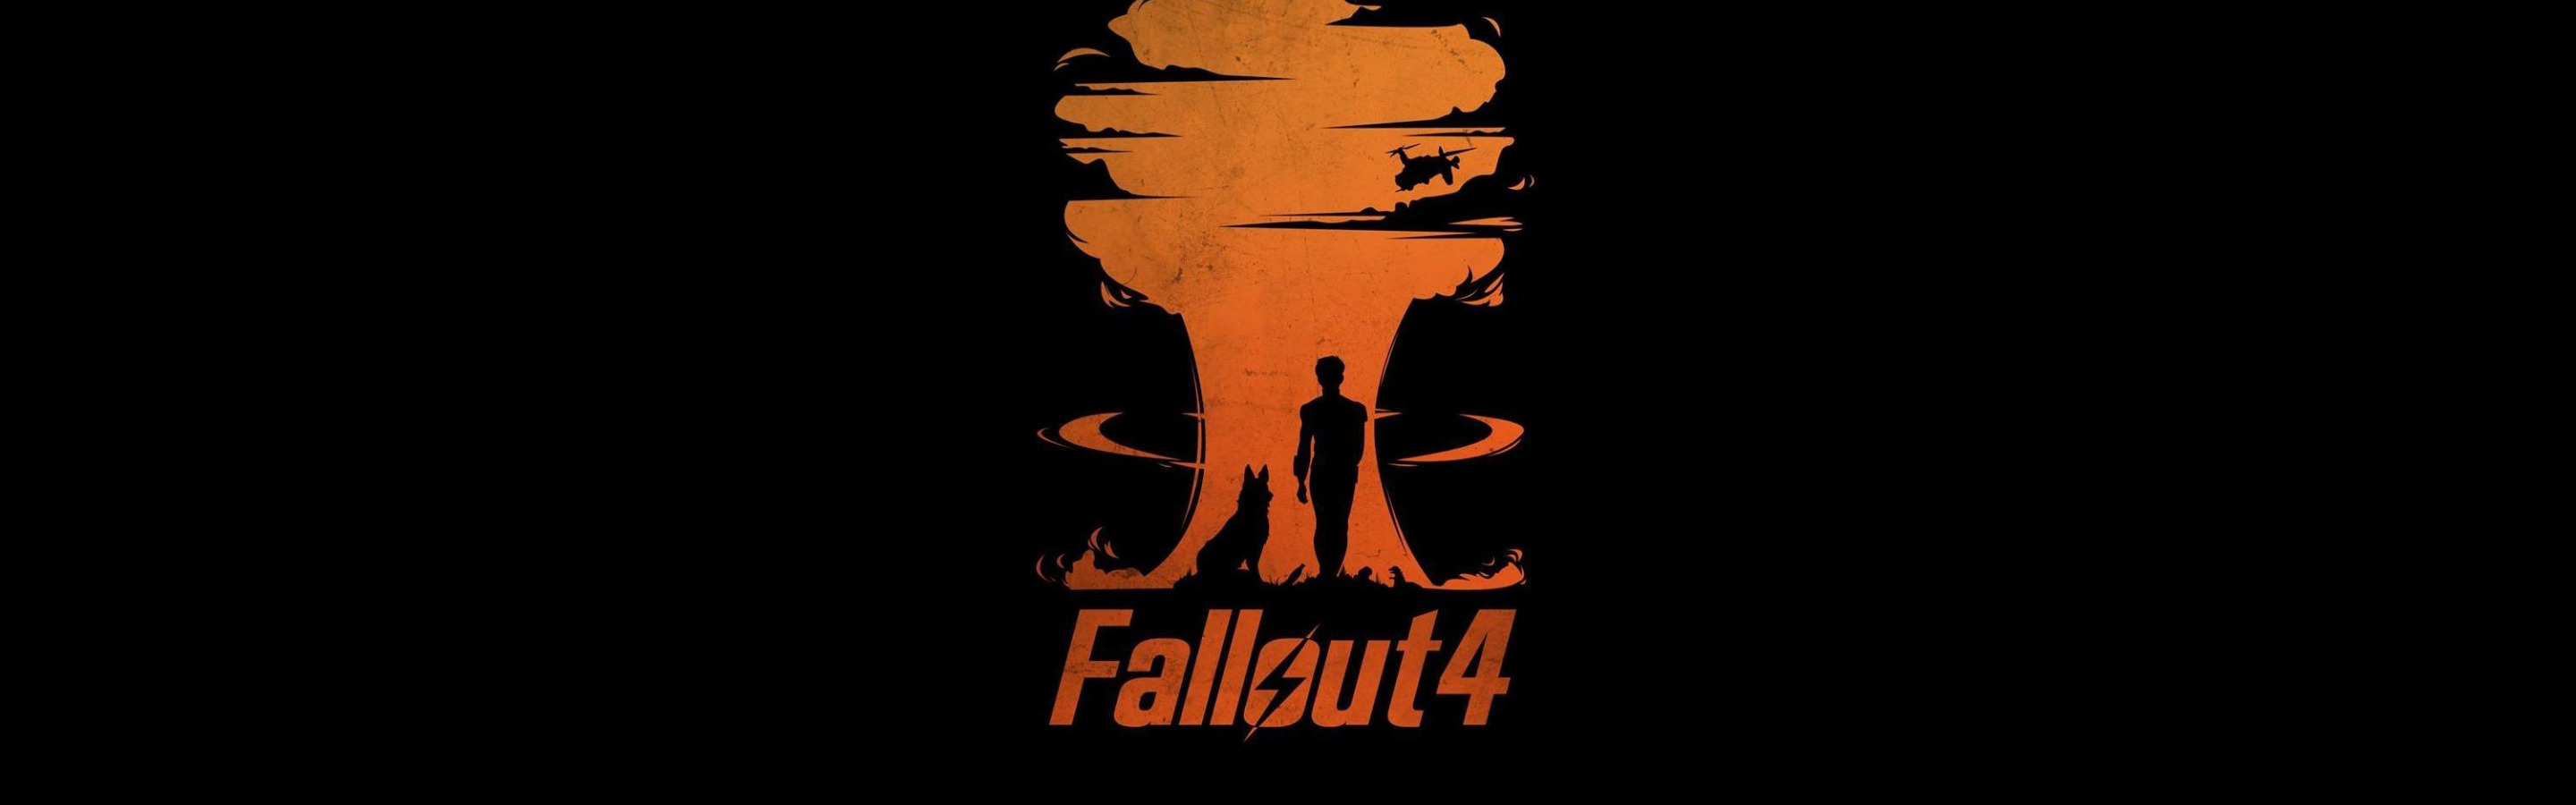 Fallout 4 обои 4k фото 101